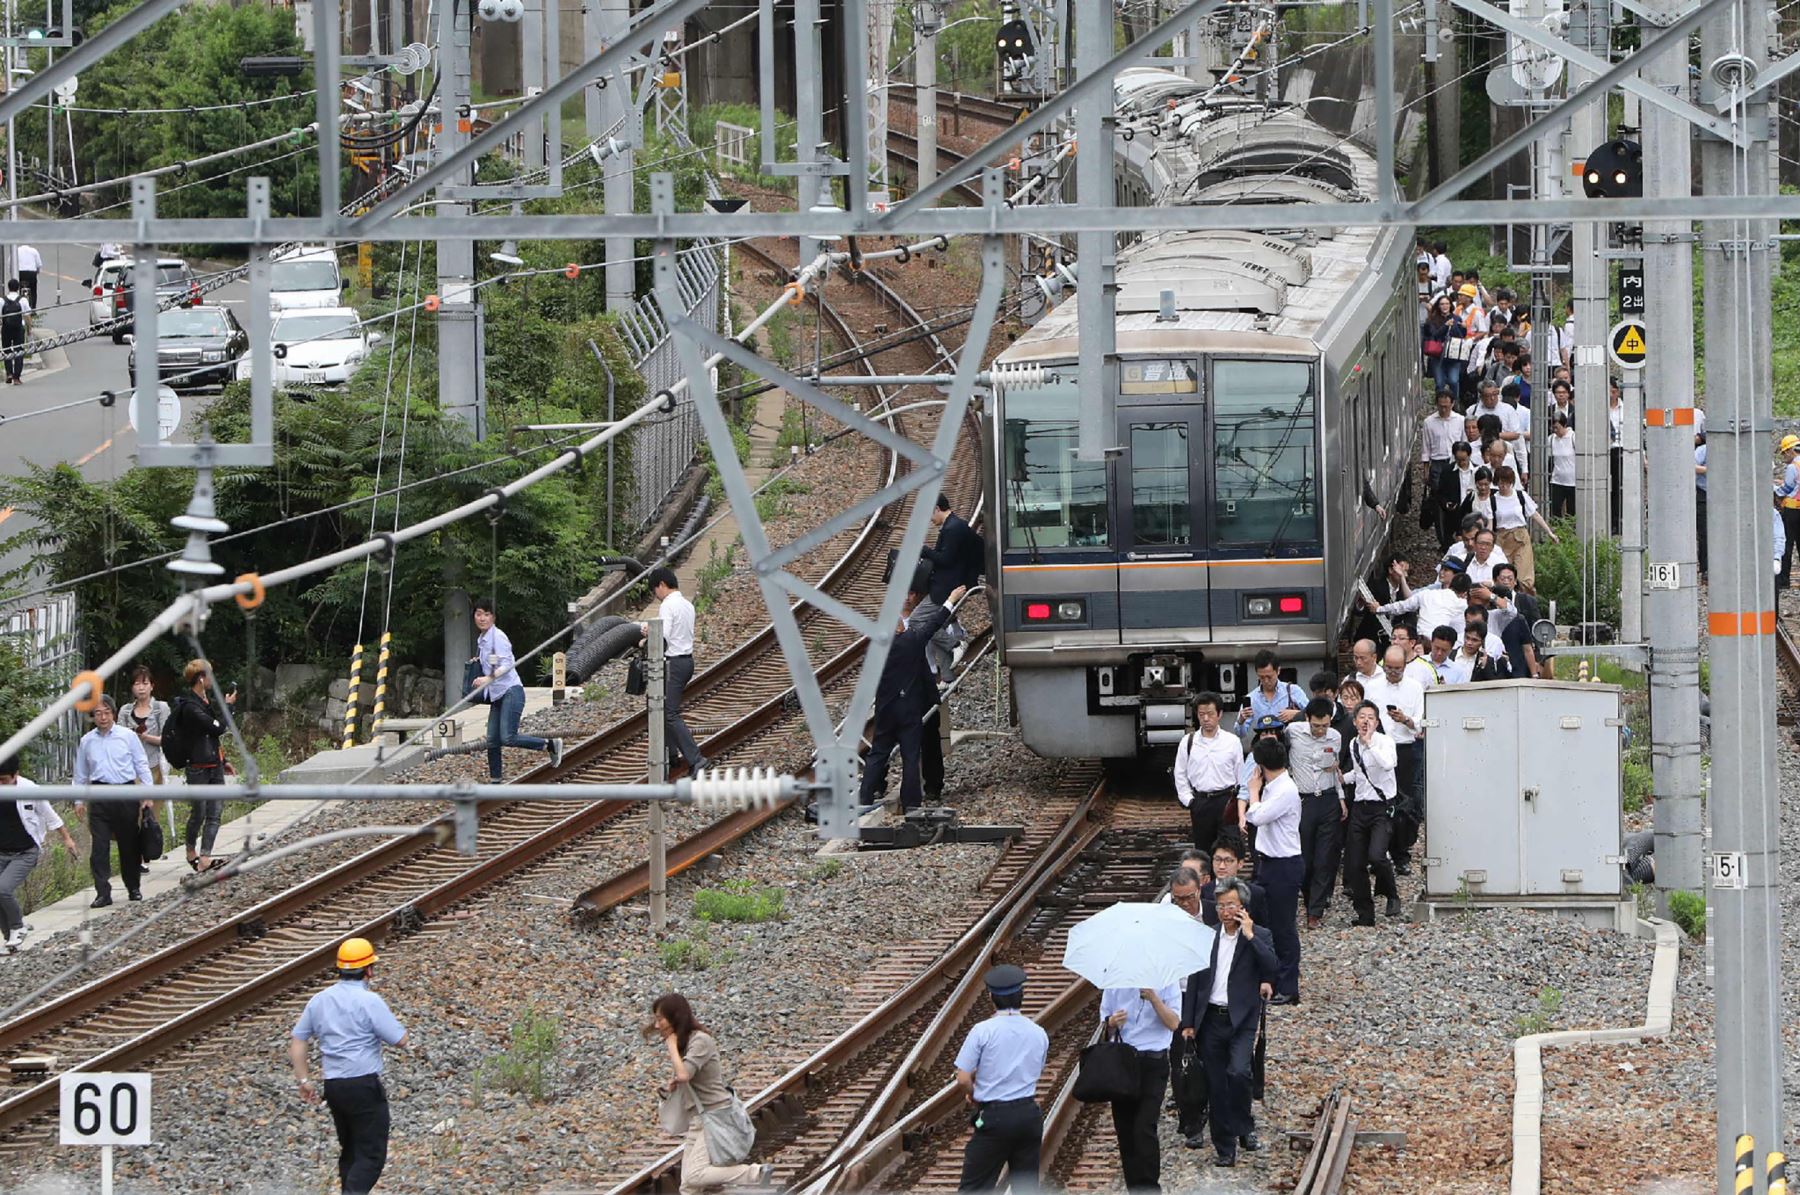 Los pasajeros de un tren caminan por las vías del tren después de un terremoto en Osaka el 18 de junio de 2018. Un fuerte sismo sacudió el oeste de Japón a principios del 18 de junio, pero no hubo informes inmediatos de mayor daño o riesgo de olas de tsunami, dijeron las autoridades.Foto: AFP